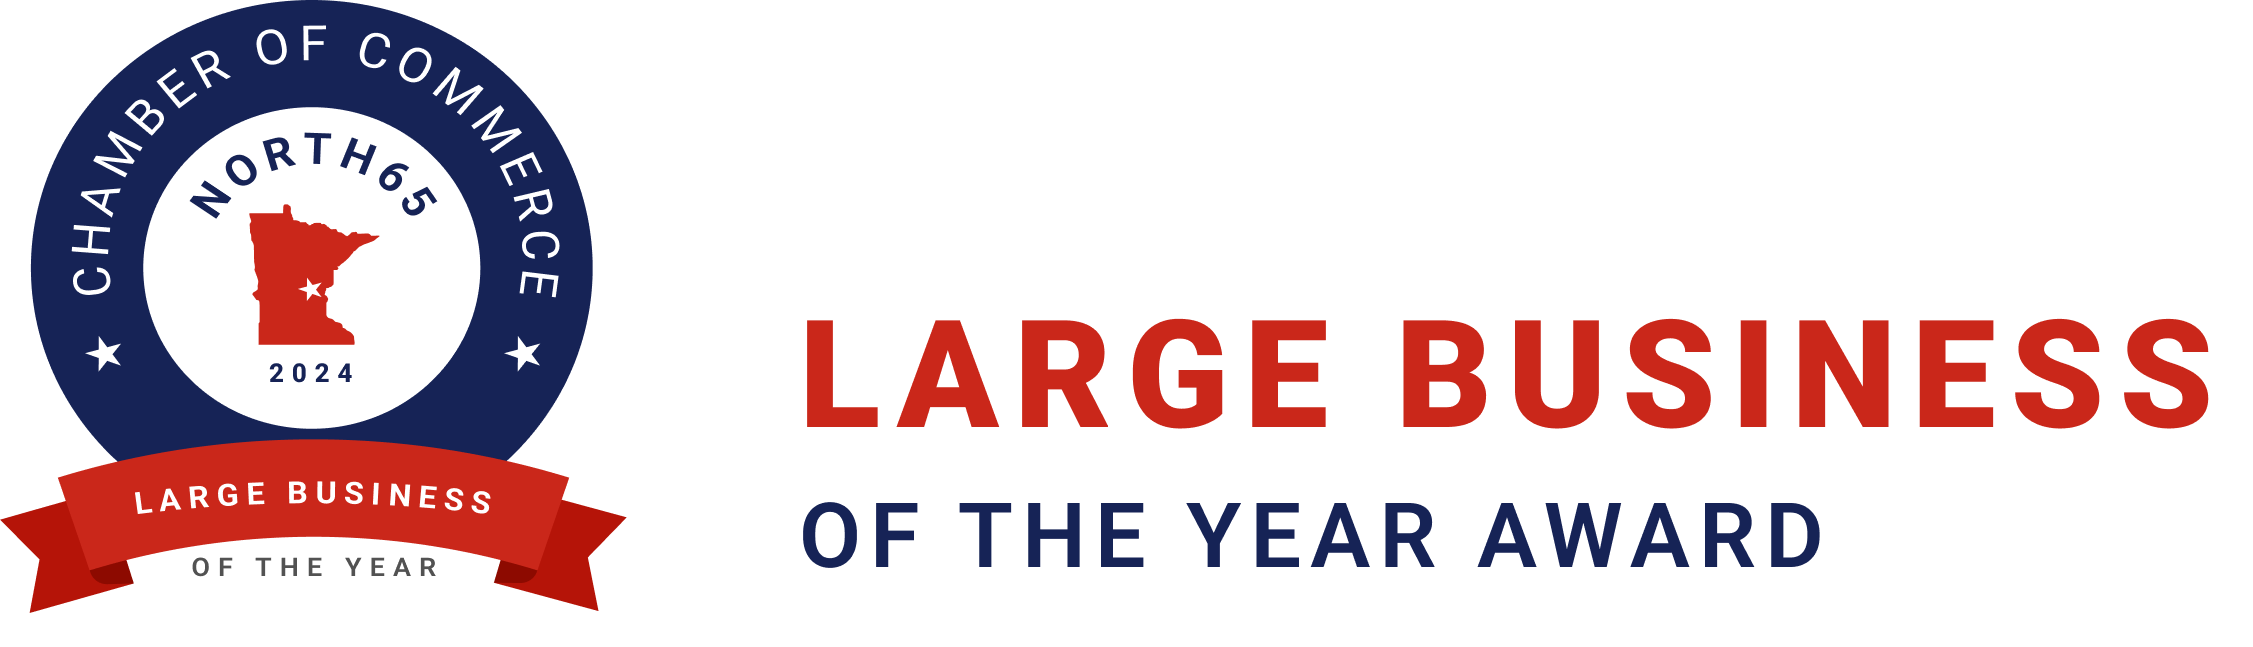 Large Business Award 2024 Image